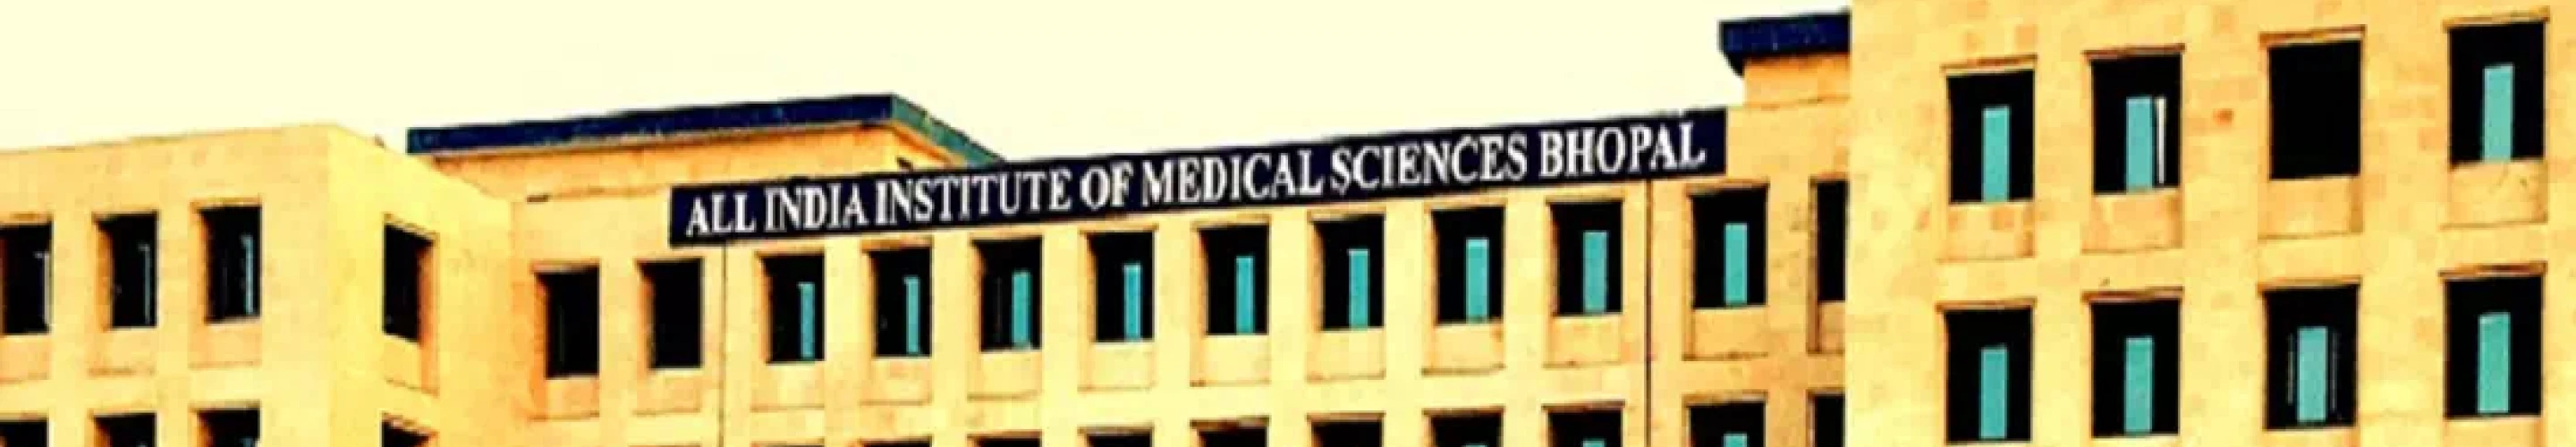 All India Institute of Medical Sciences, AIIMS